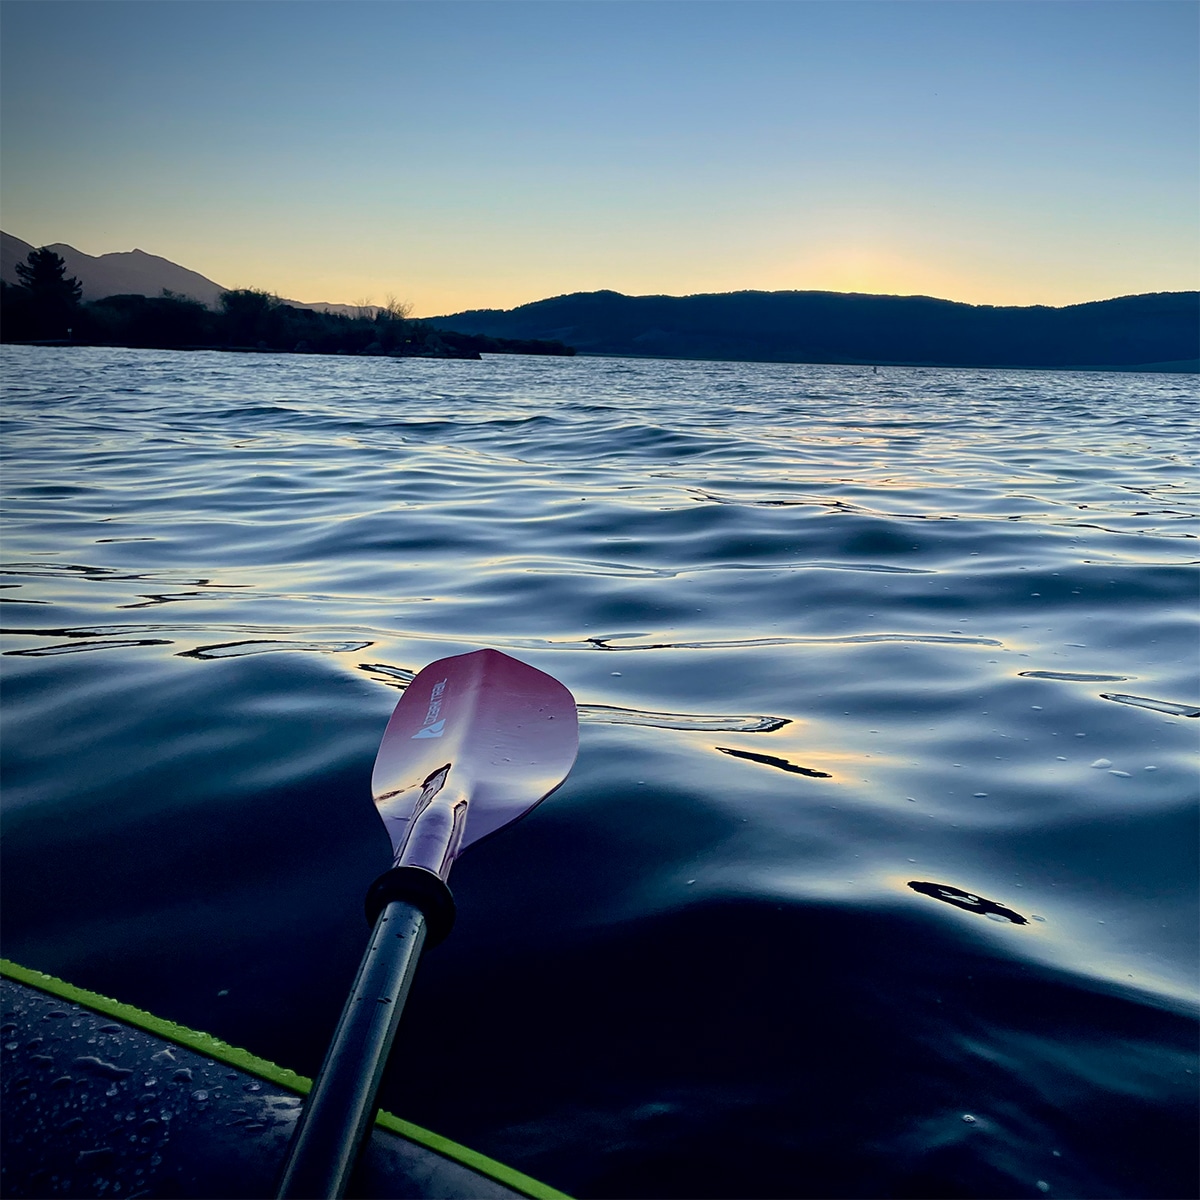 Kayaking in Henry's Lake at sunset.